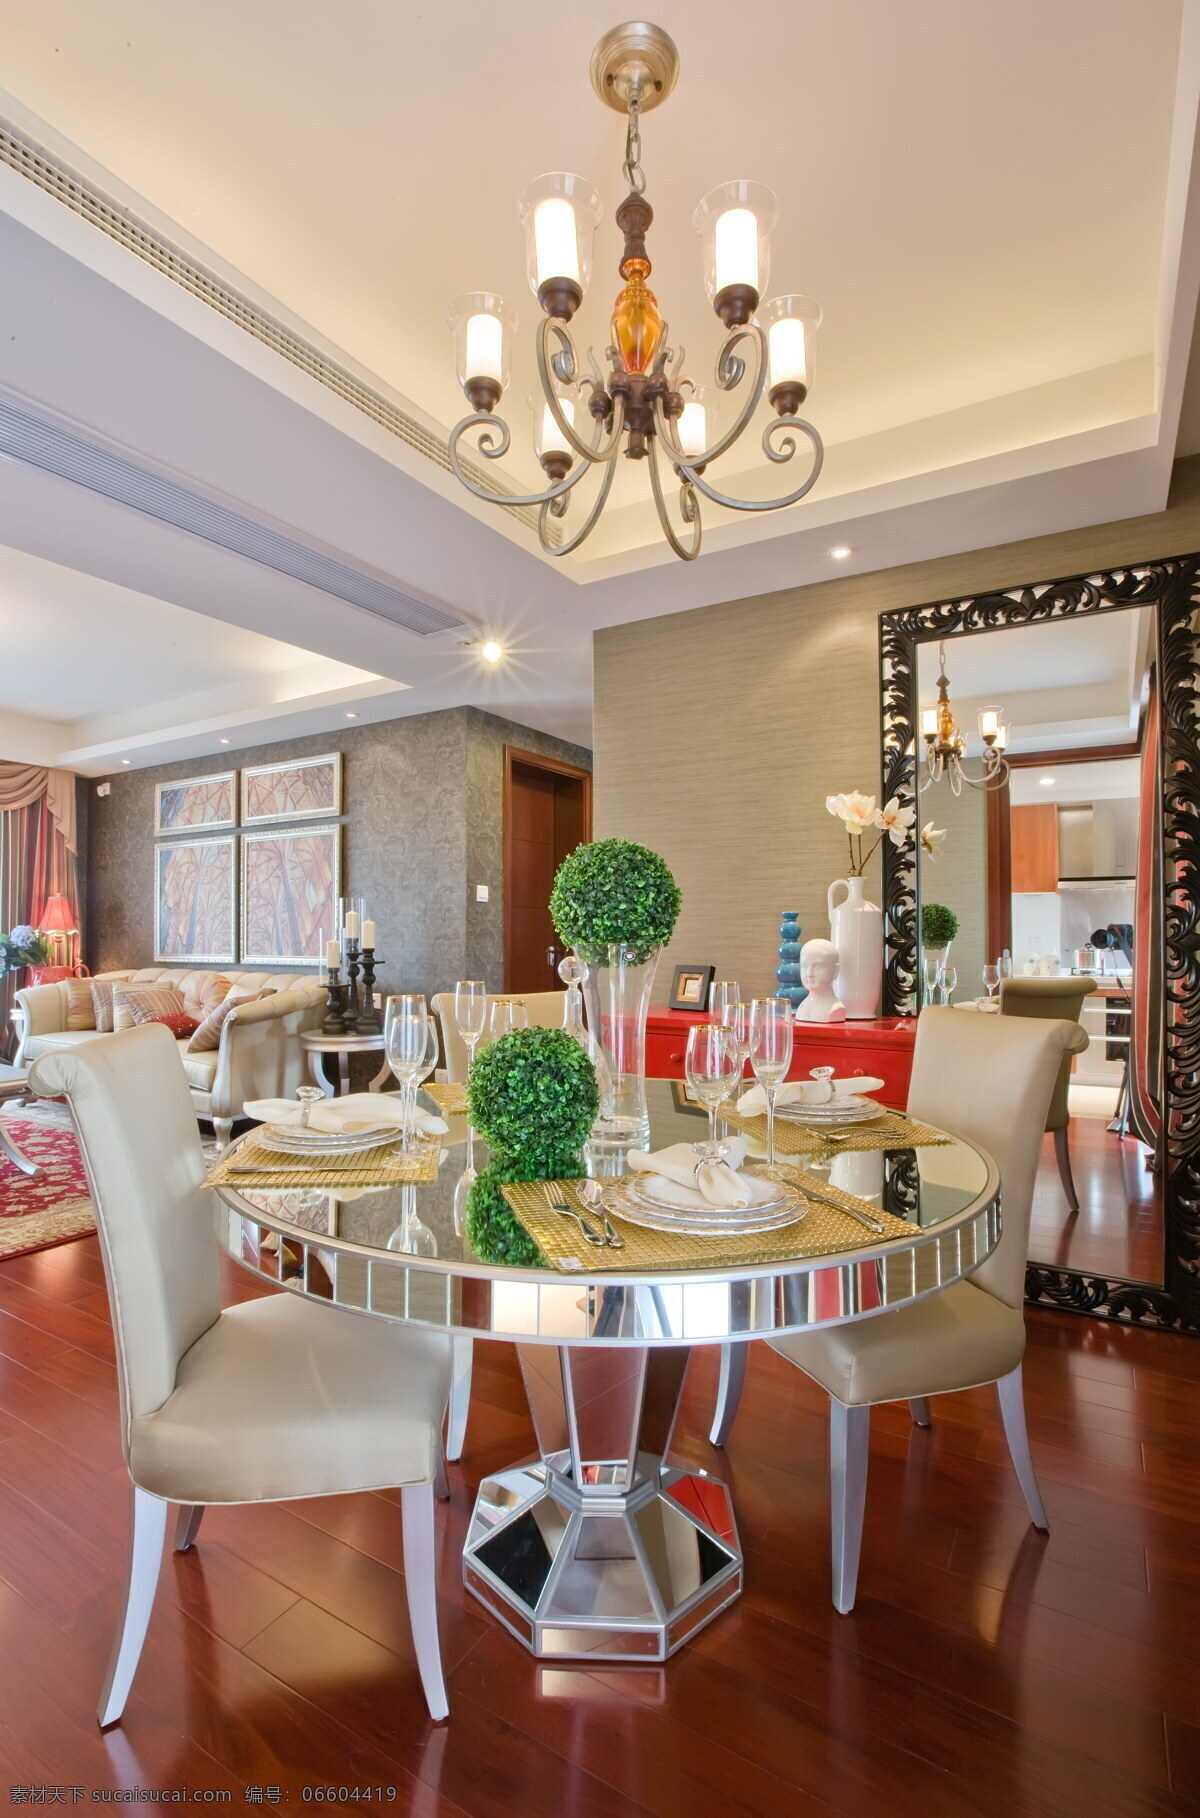 室内 餐厅 吊灯 欧式 典雅 装修 效果图 圆形餐桌 清新园艺 精美餐具 水晶吊灯 大空间